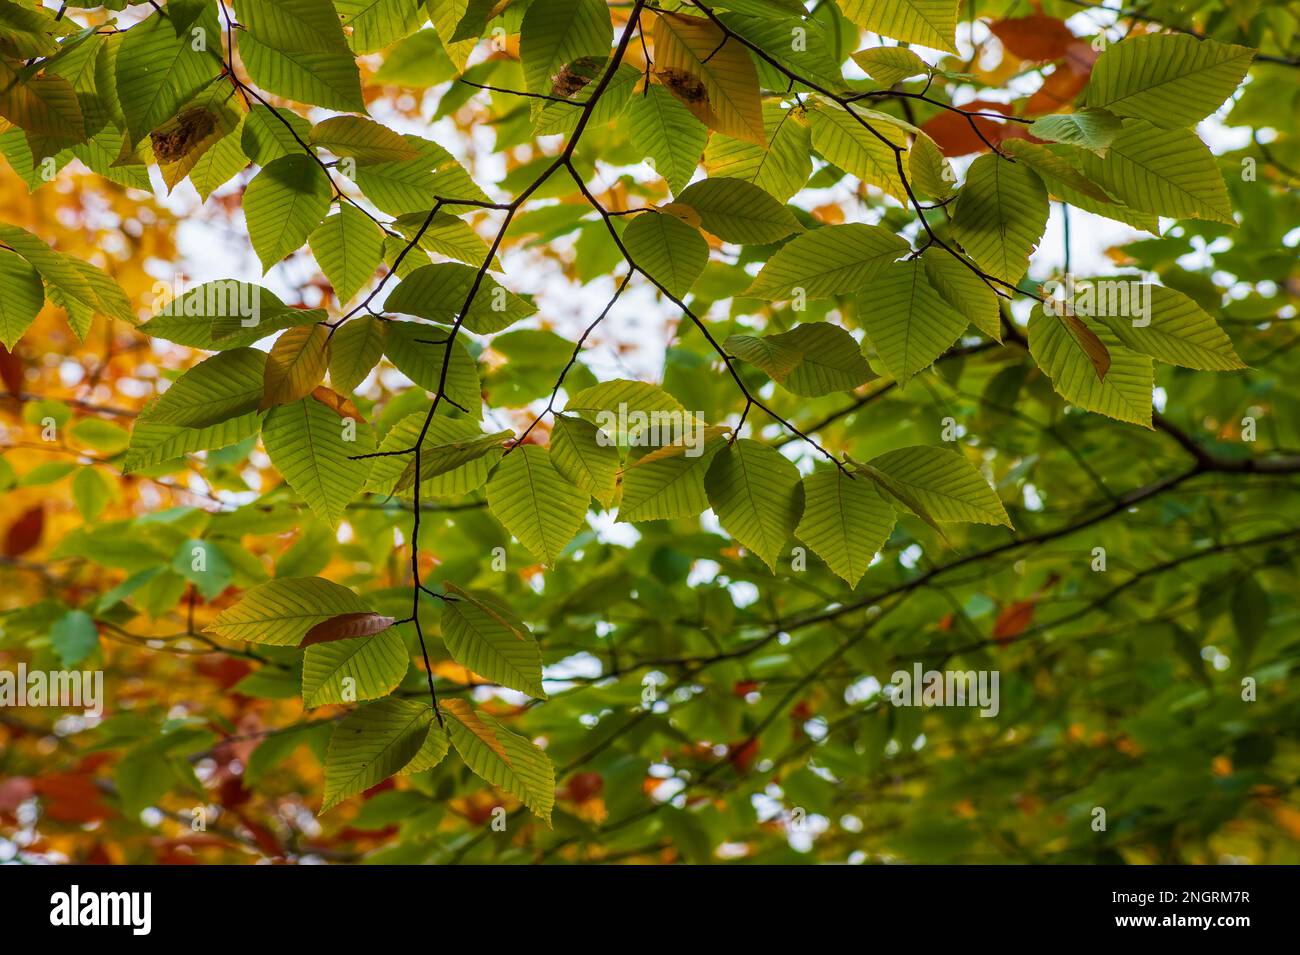 Branche d'un hêtre américain (Fagus grandifolia) au sommet du feuillage d'automne. Feuilles dans les tons de vert. Borestone Mountain, Maine, États-Unis. Banque D'Images